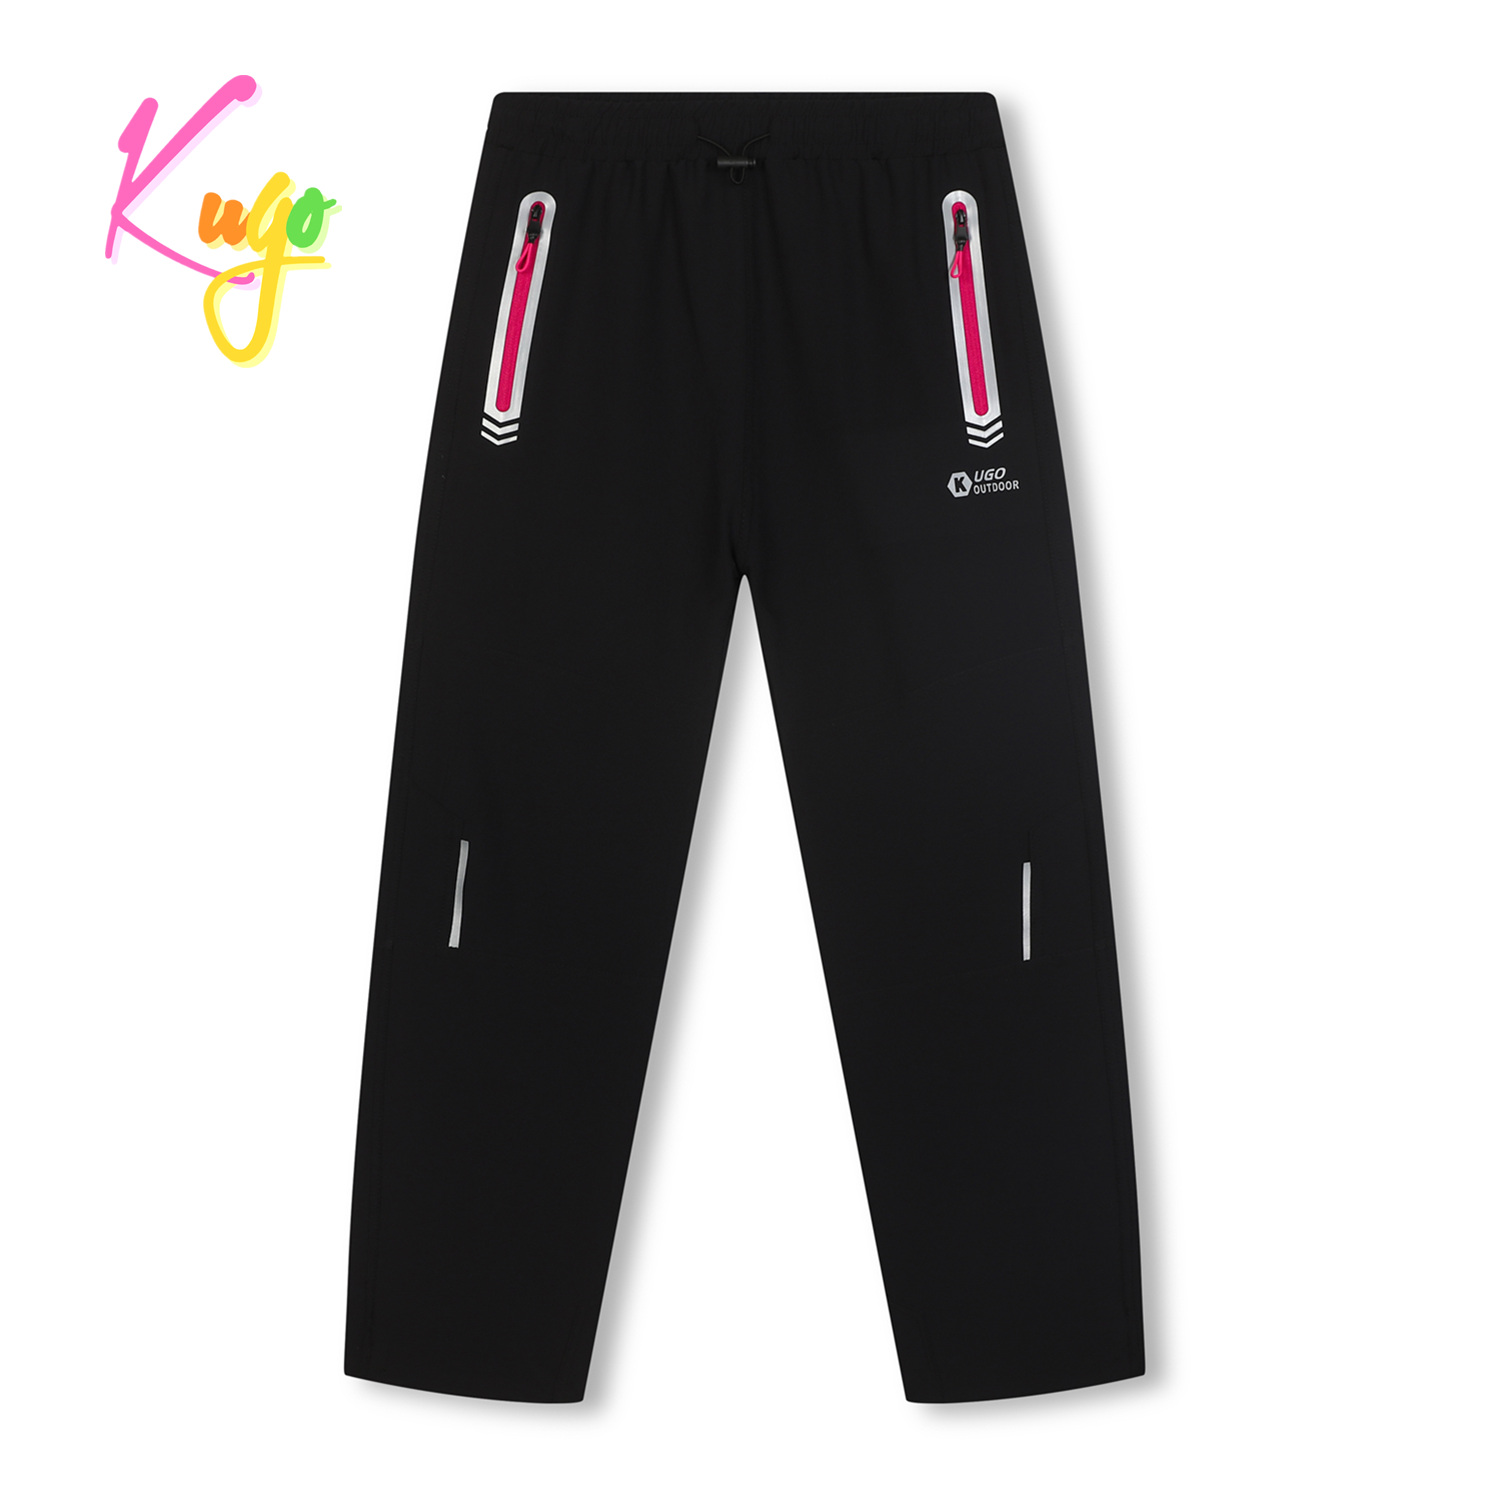 Dívčí softshellové kalhoty - KUGO HK7578, černá / růžové zipy Barva: Černá, Velikost: 140